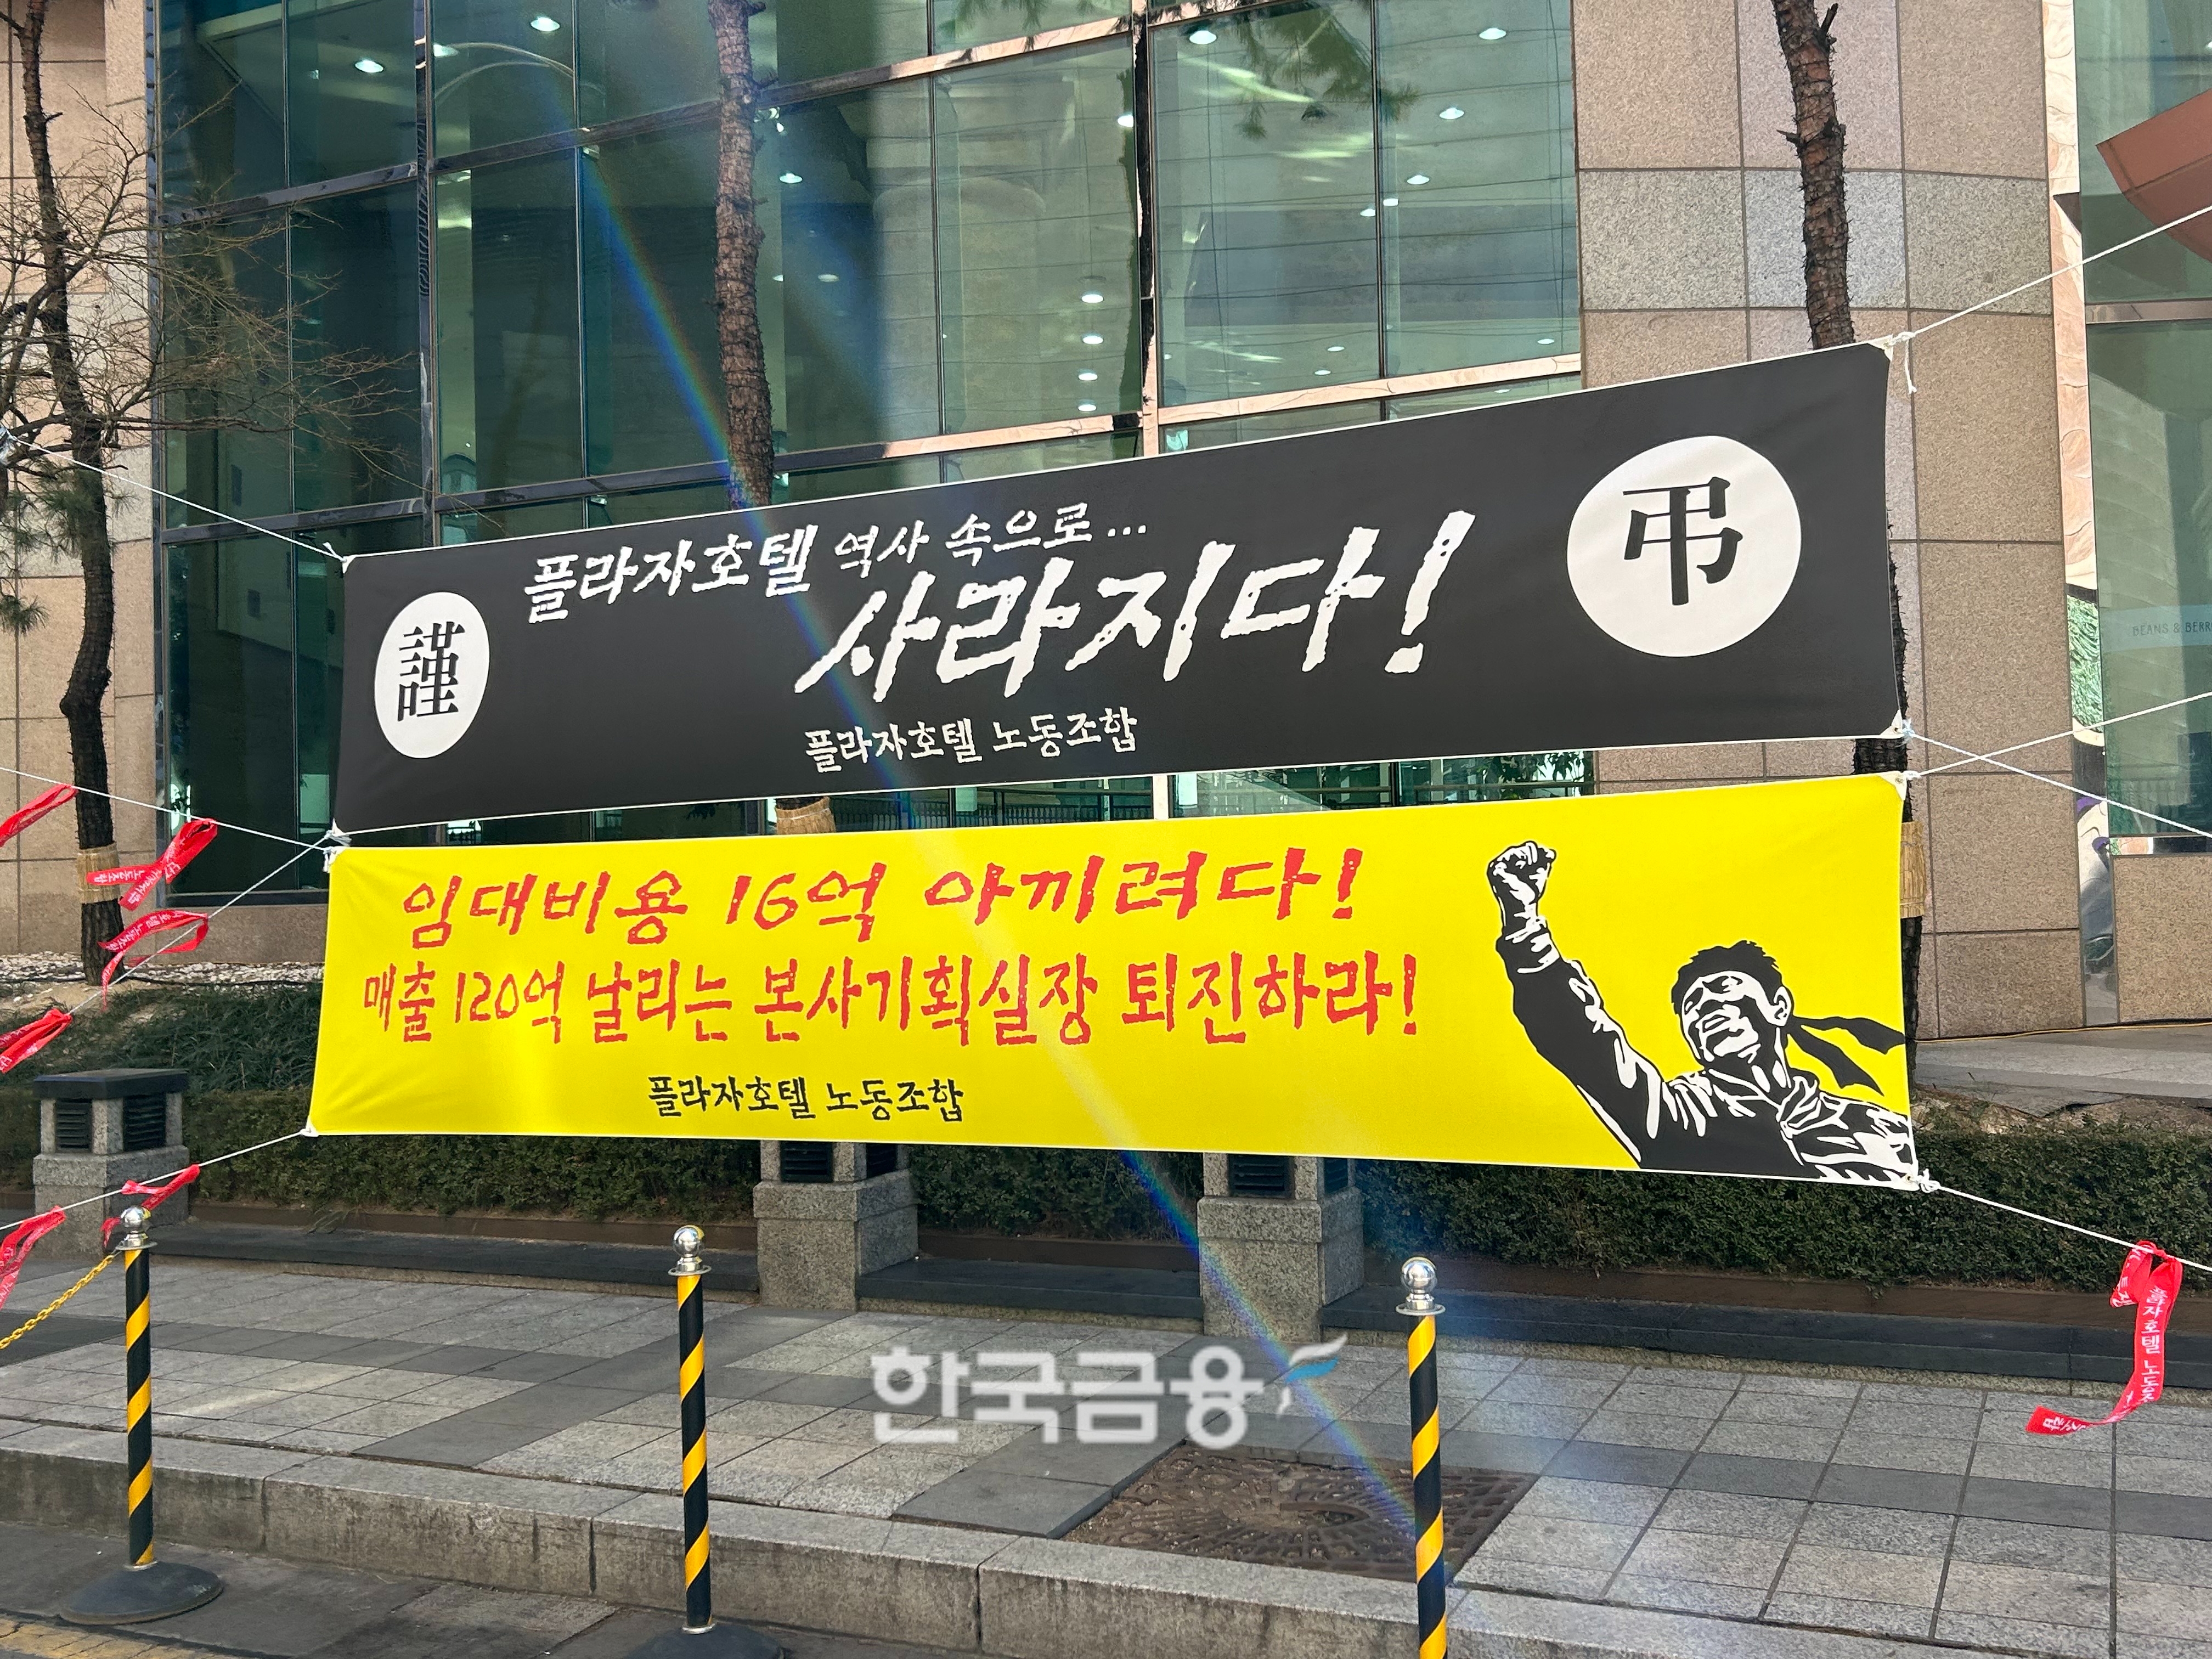 한화호텔앤드리조트가 플라자호텔 서울 사무실 전환 작업에 들어가자 노조가 시위에 나섰다. /사진=박슬기 기자 